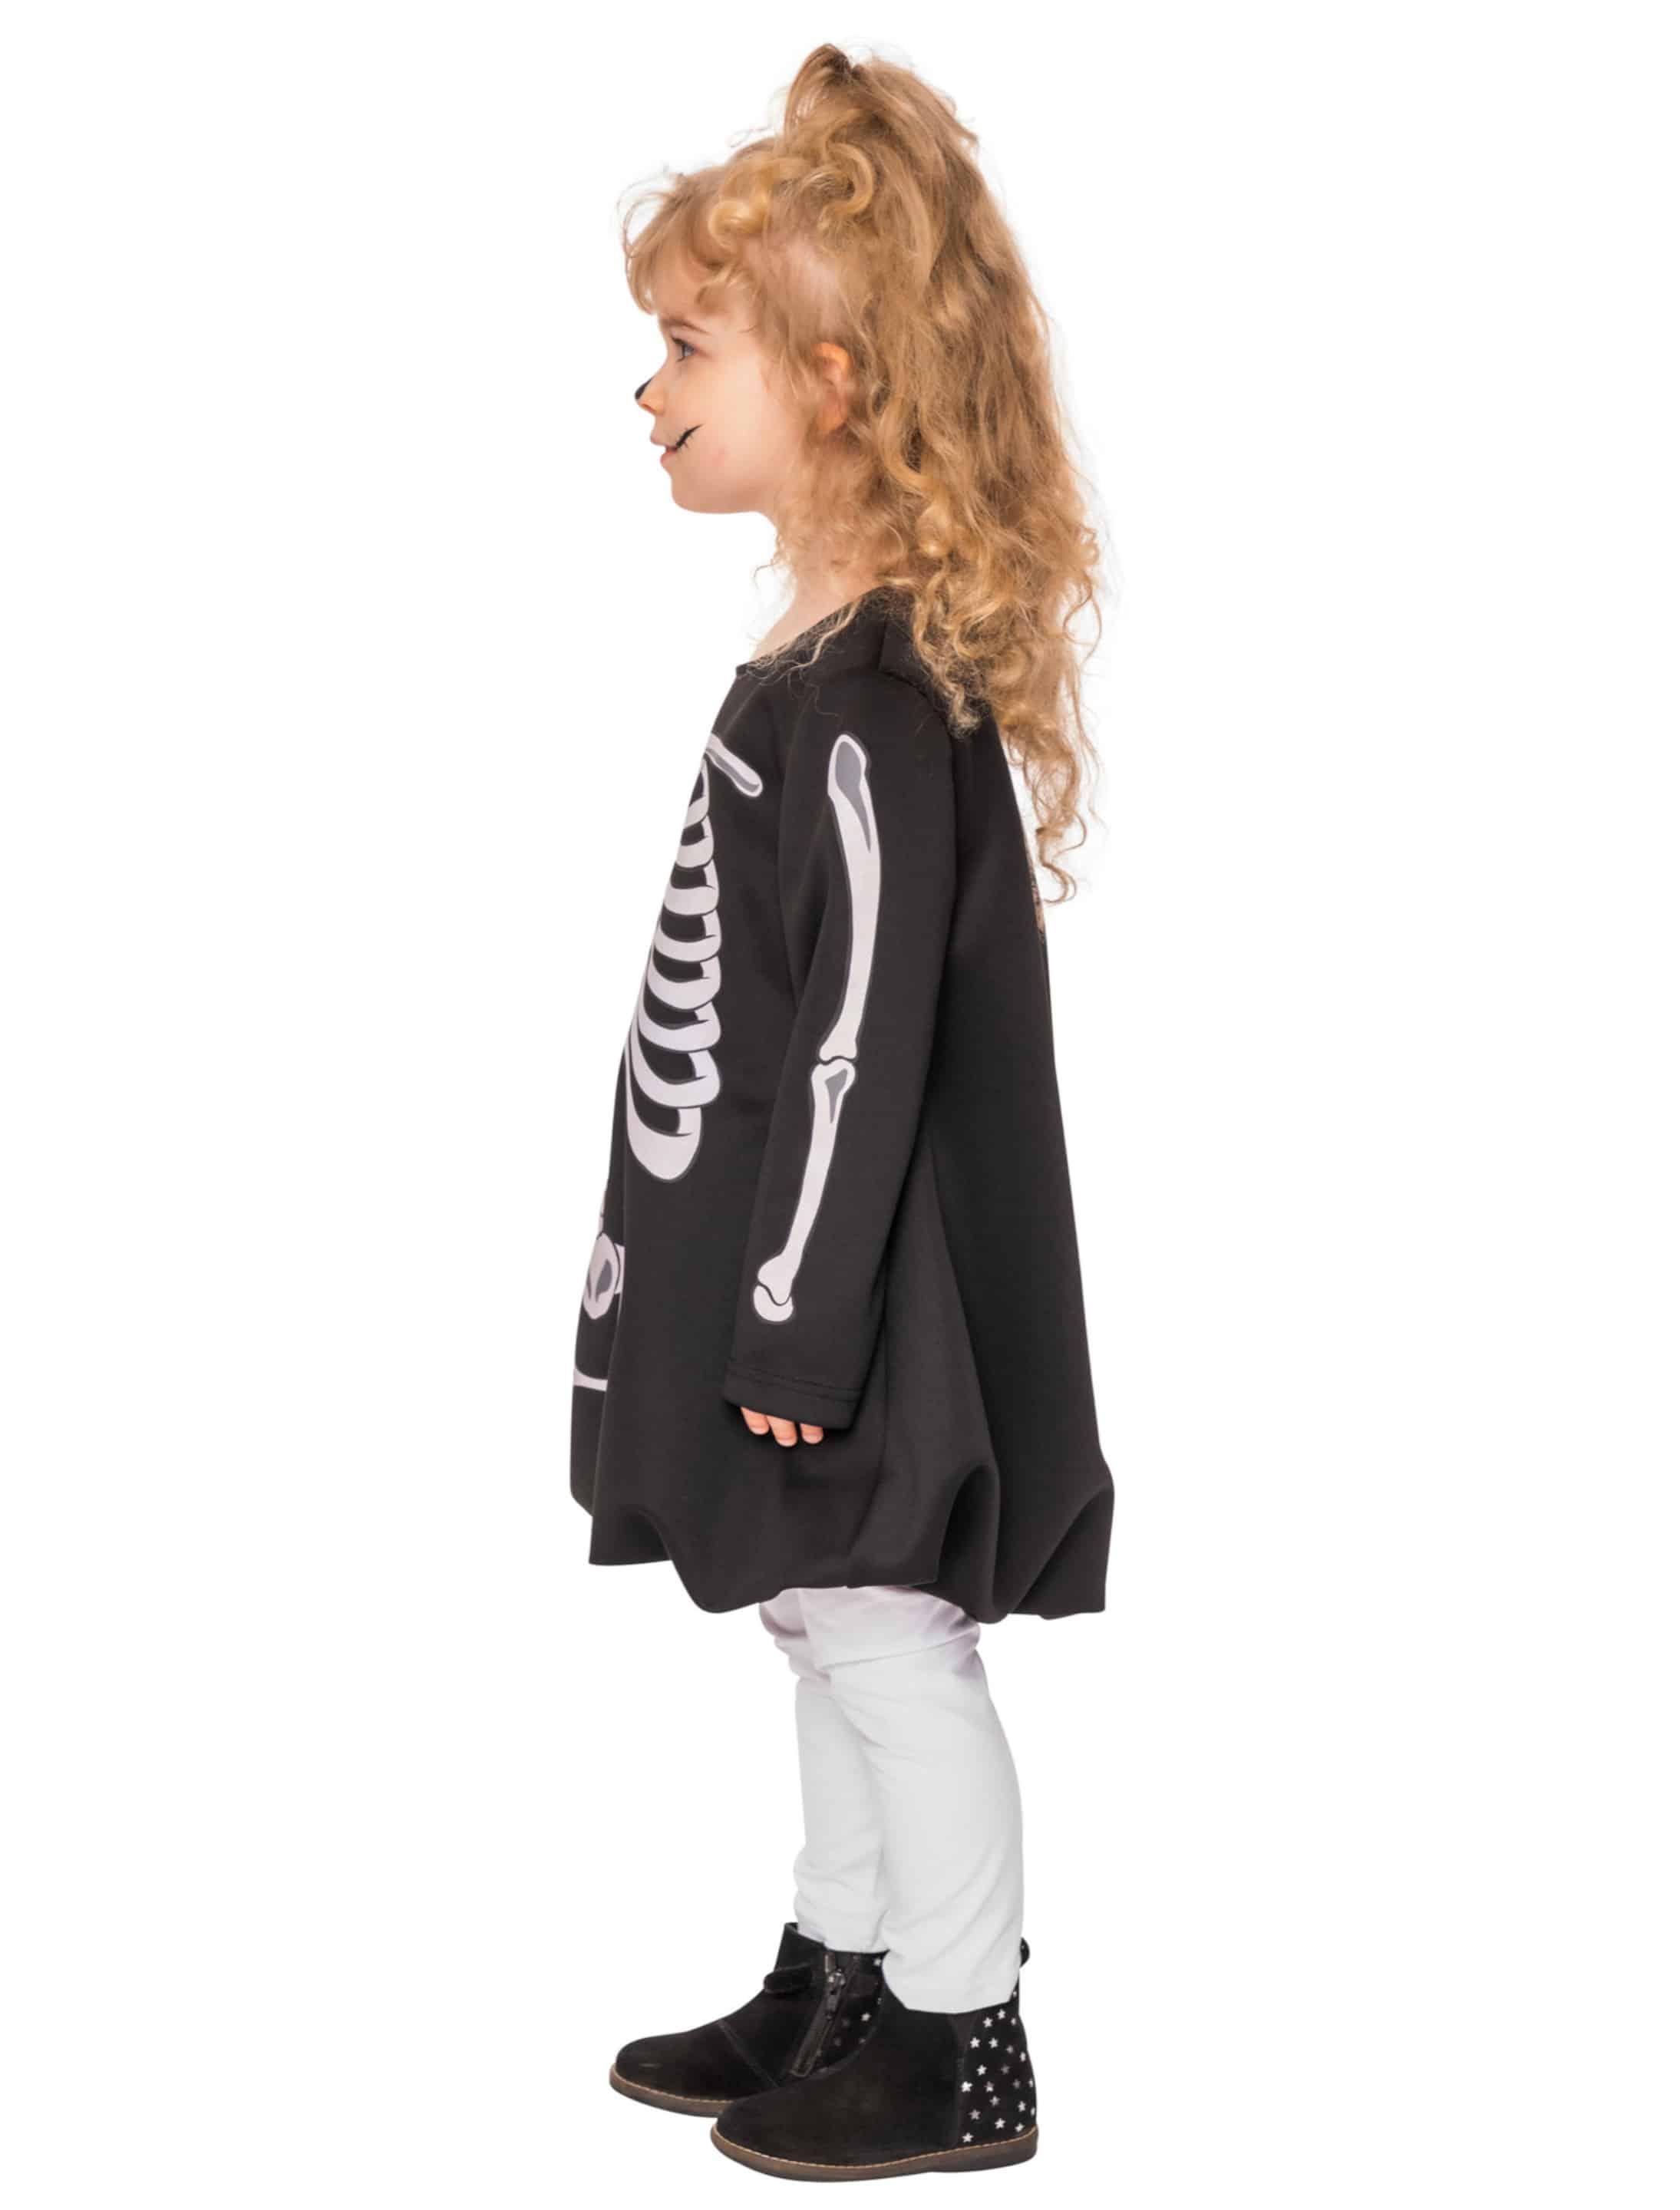 Kleid mit Knochen Kinder schwarz/weiß 104